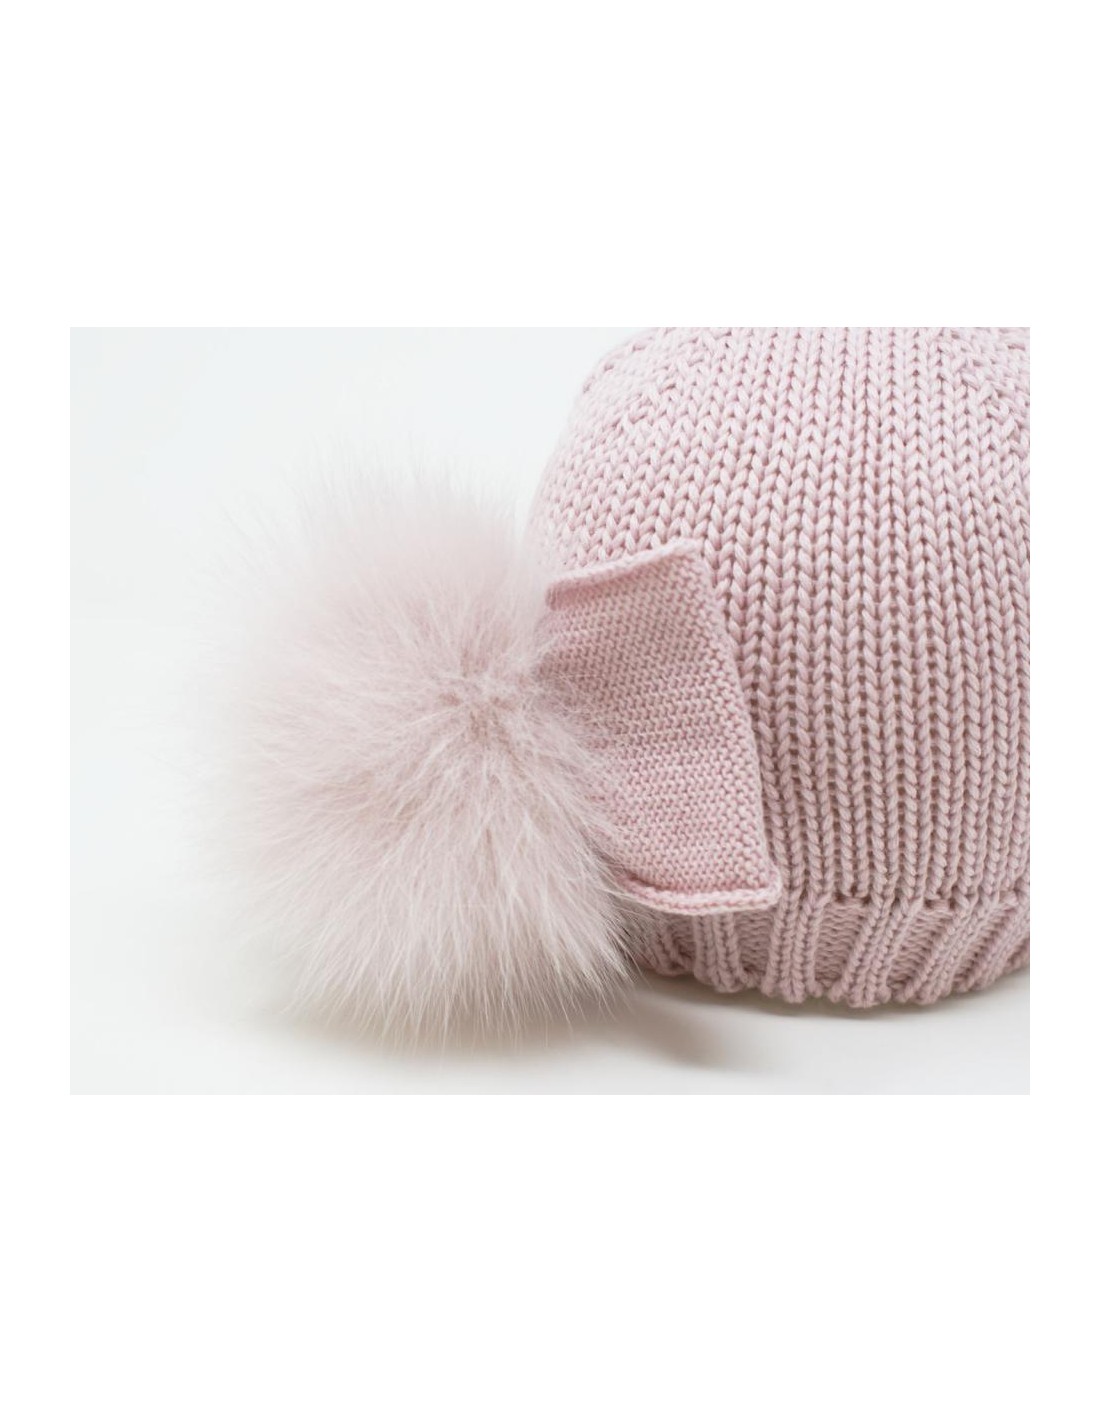 Cappello in 100% lana merino e pon pon rosa